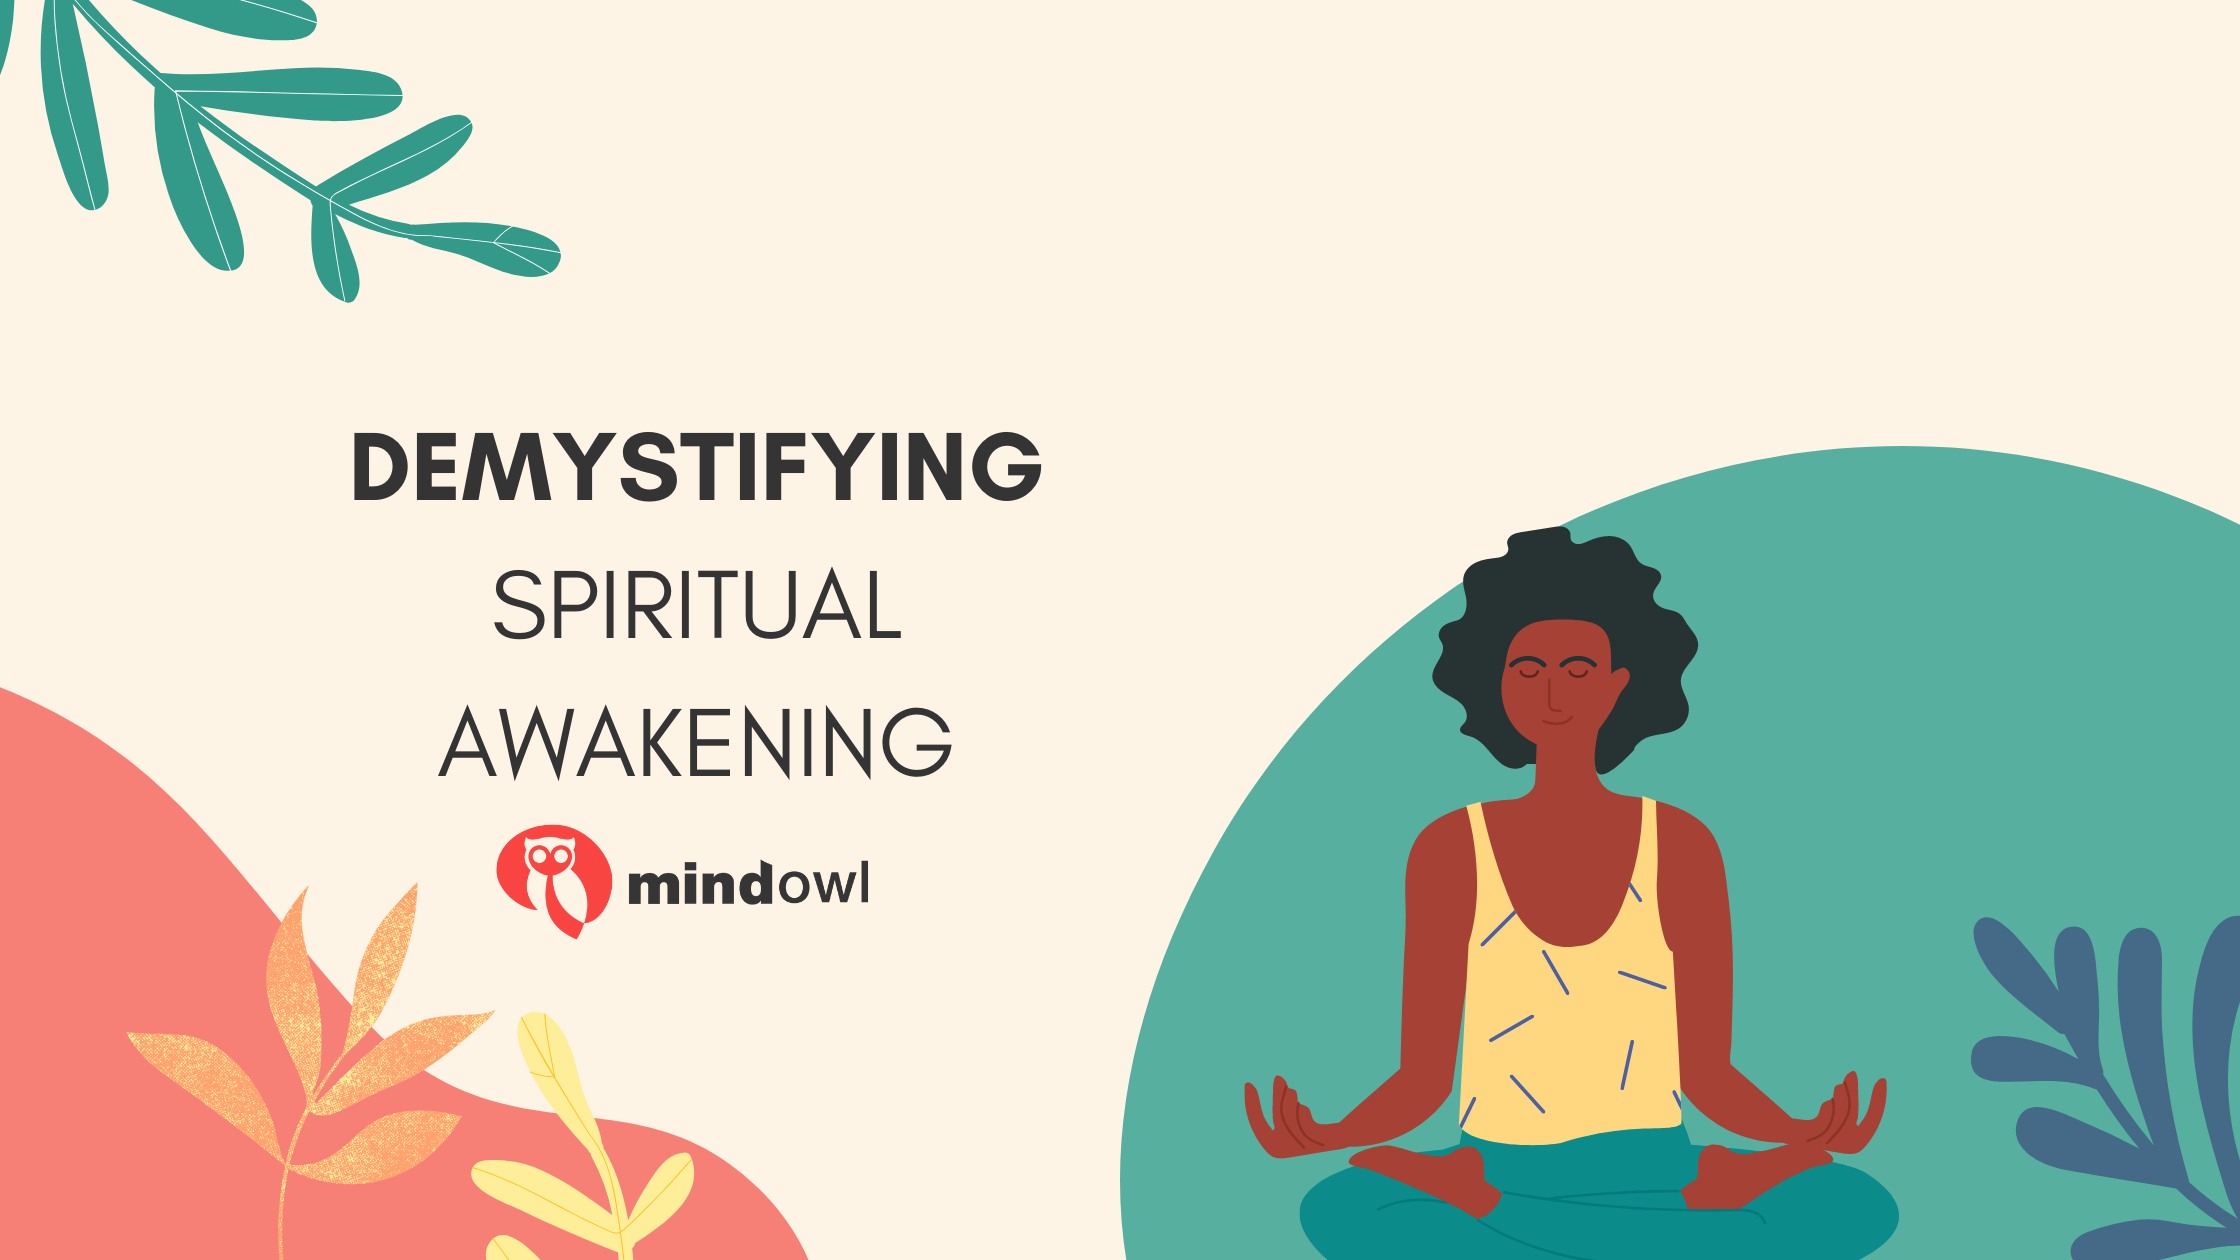 Demystifying spiritual awakening